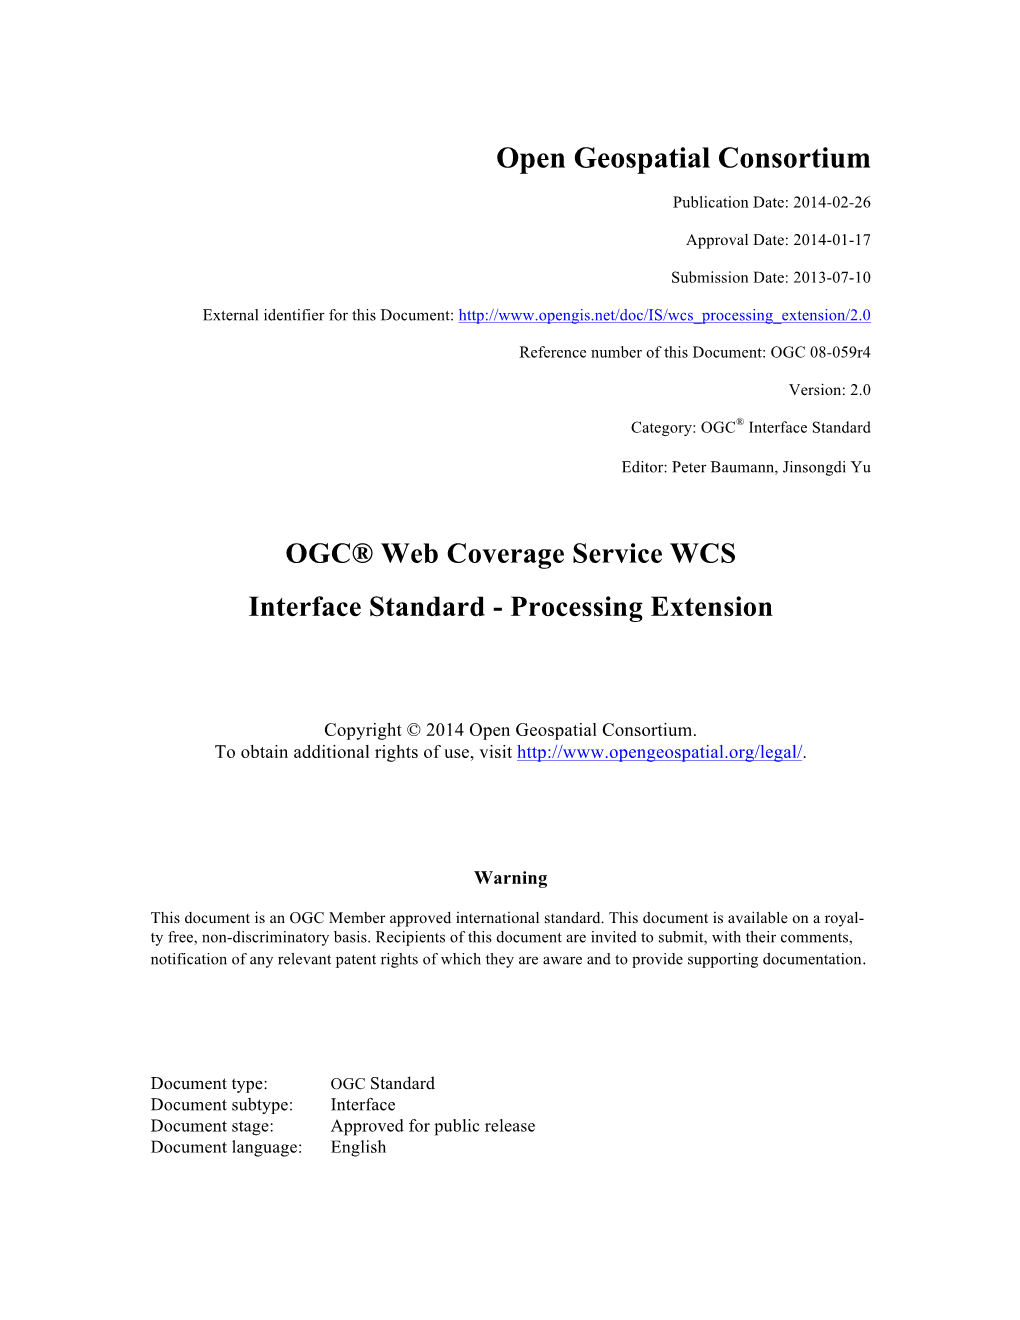 OGC 08-059R4: OGC Web Coverage Service